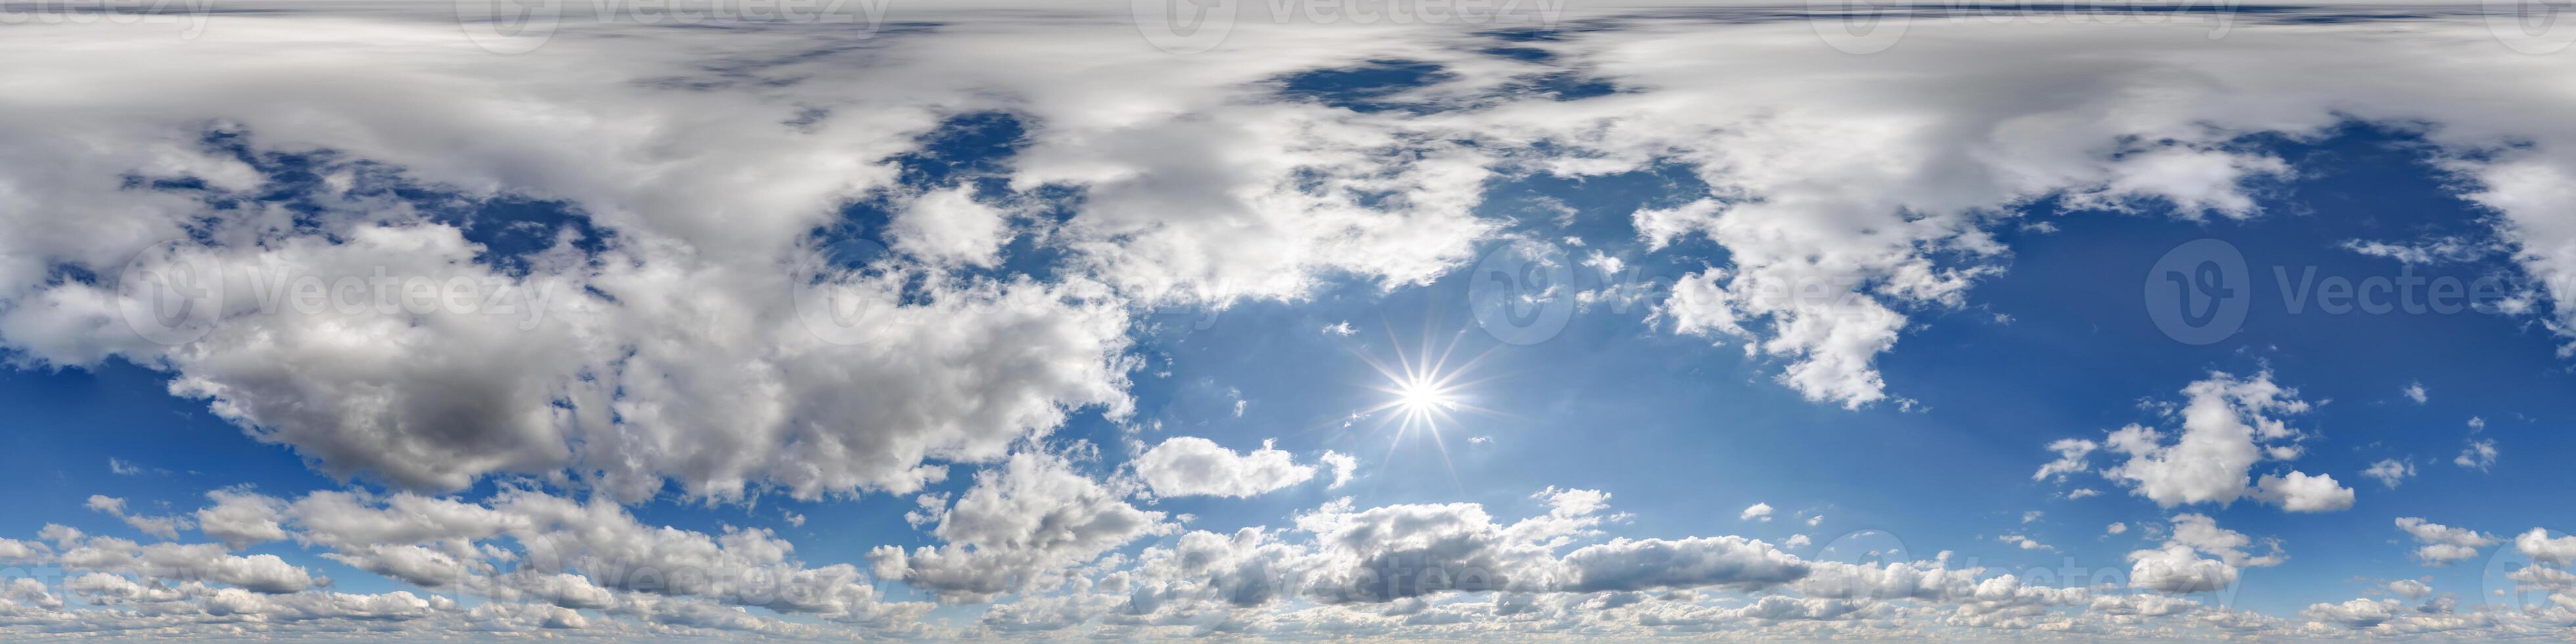 bleu ciel hdri 360 panorama vue avec des nuages dans équirectangulaire projection avec zénith pour utilisation dans 3d graphique comme skydôme remplacement ou Éditer drone coup photo